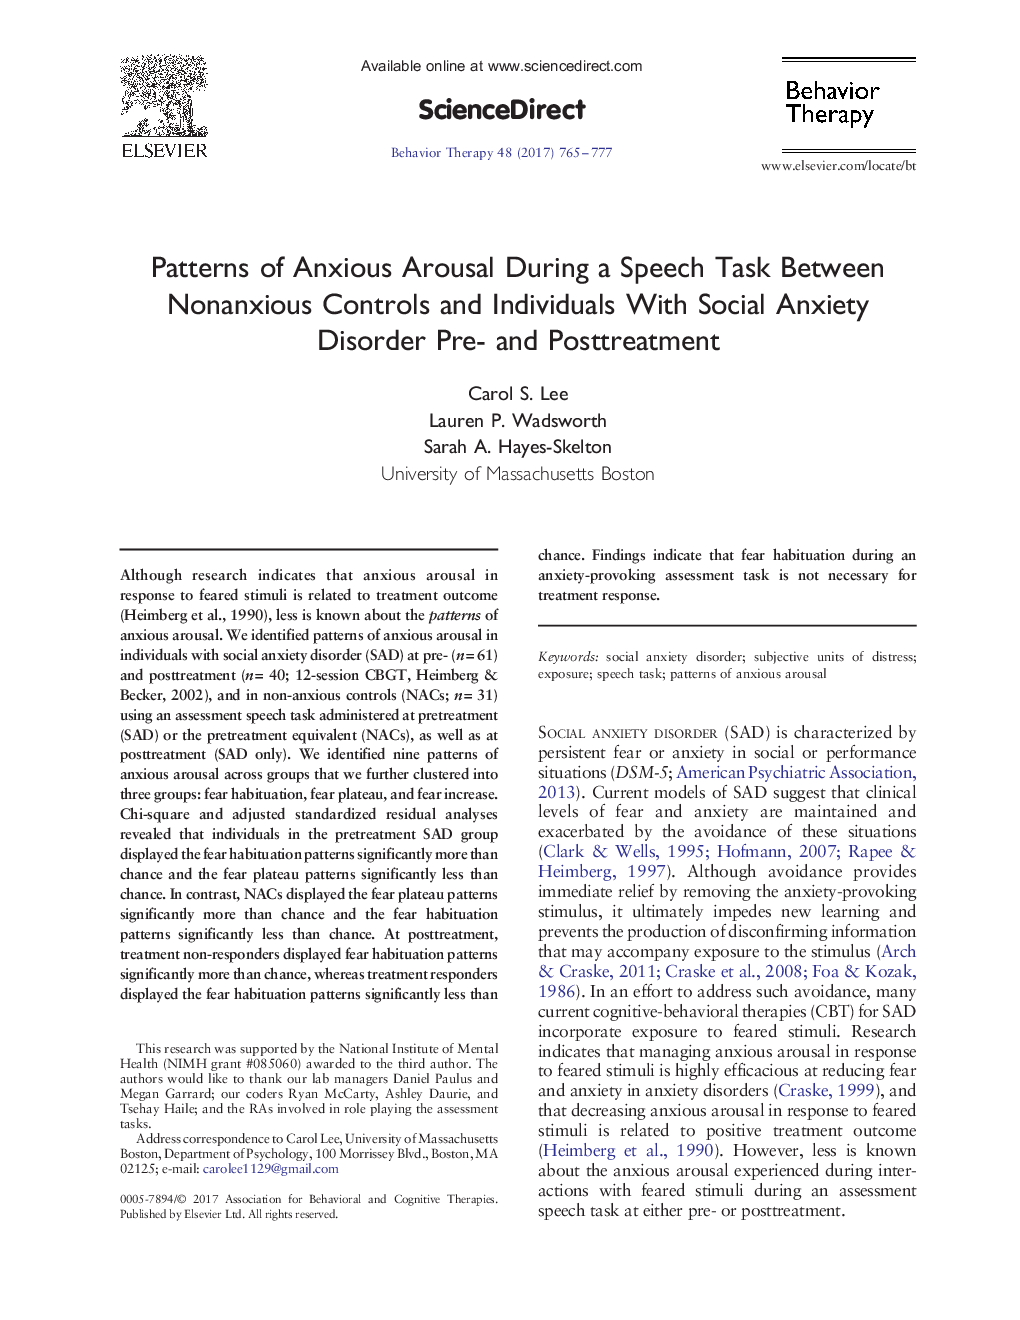 الگوی تحریک اضطراب در طول یک کار گفتاری بین کنترل های غیرواقعی و افراد مبتلا به اختلال اضطراب اجتماعی قبل و بعد 